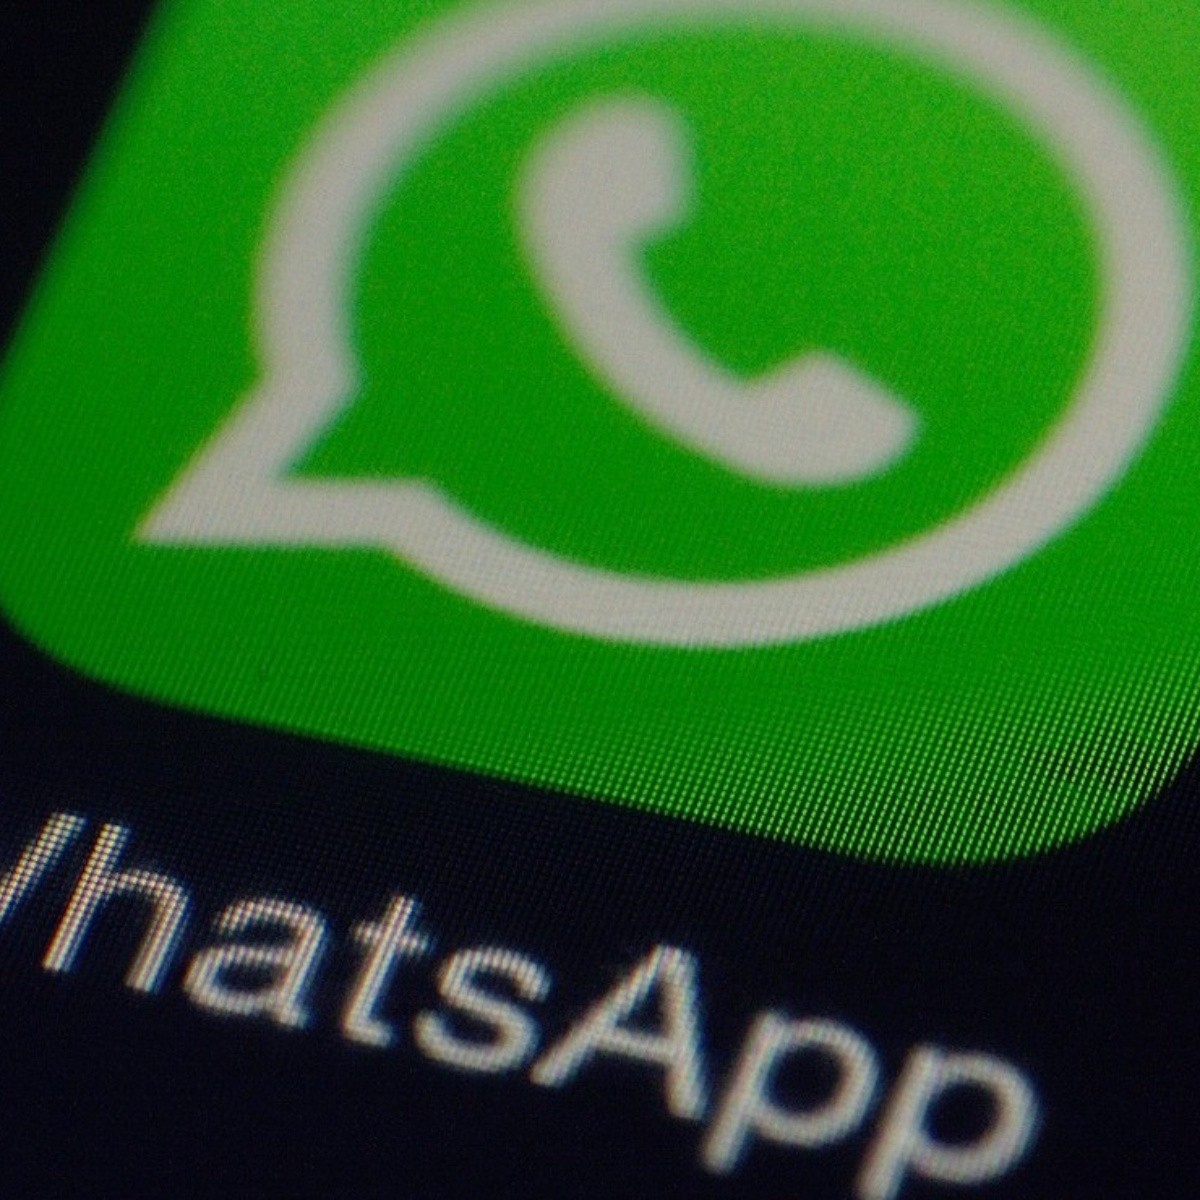 protege tu privacidad en whatsapp: consejos y trucos para una comunicación segura